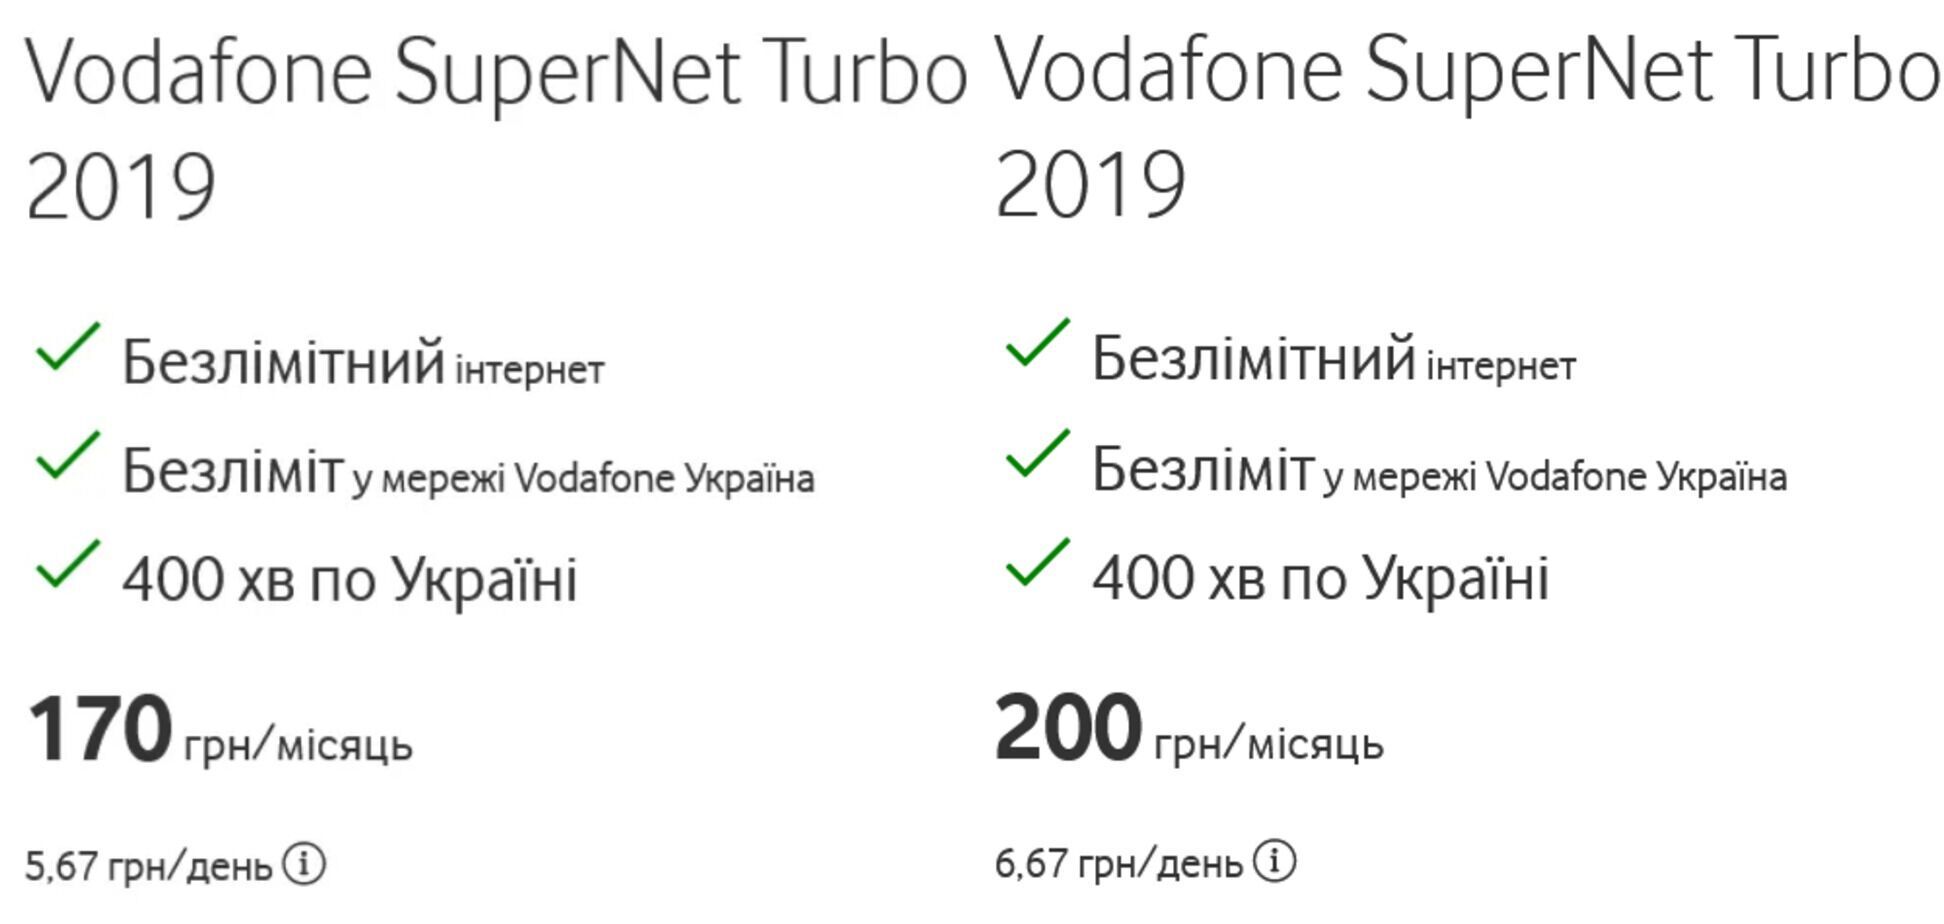 Тариф SuperNet Turbo 2019 подорожчав на 30 грн/місяць